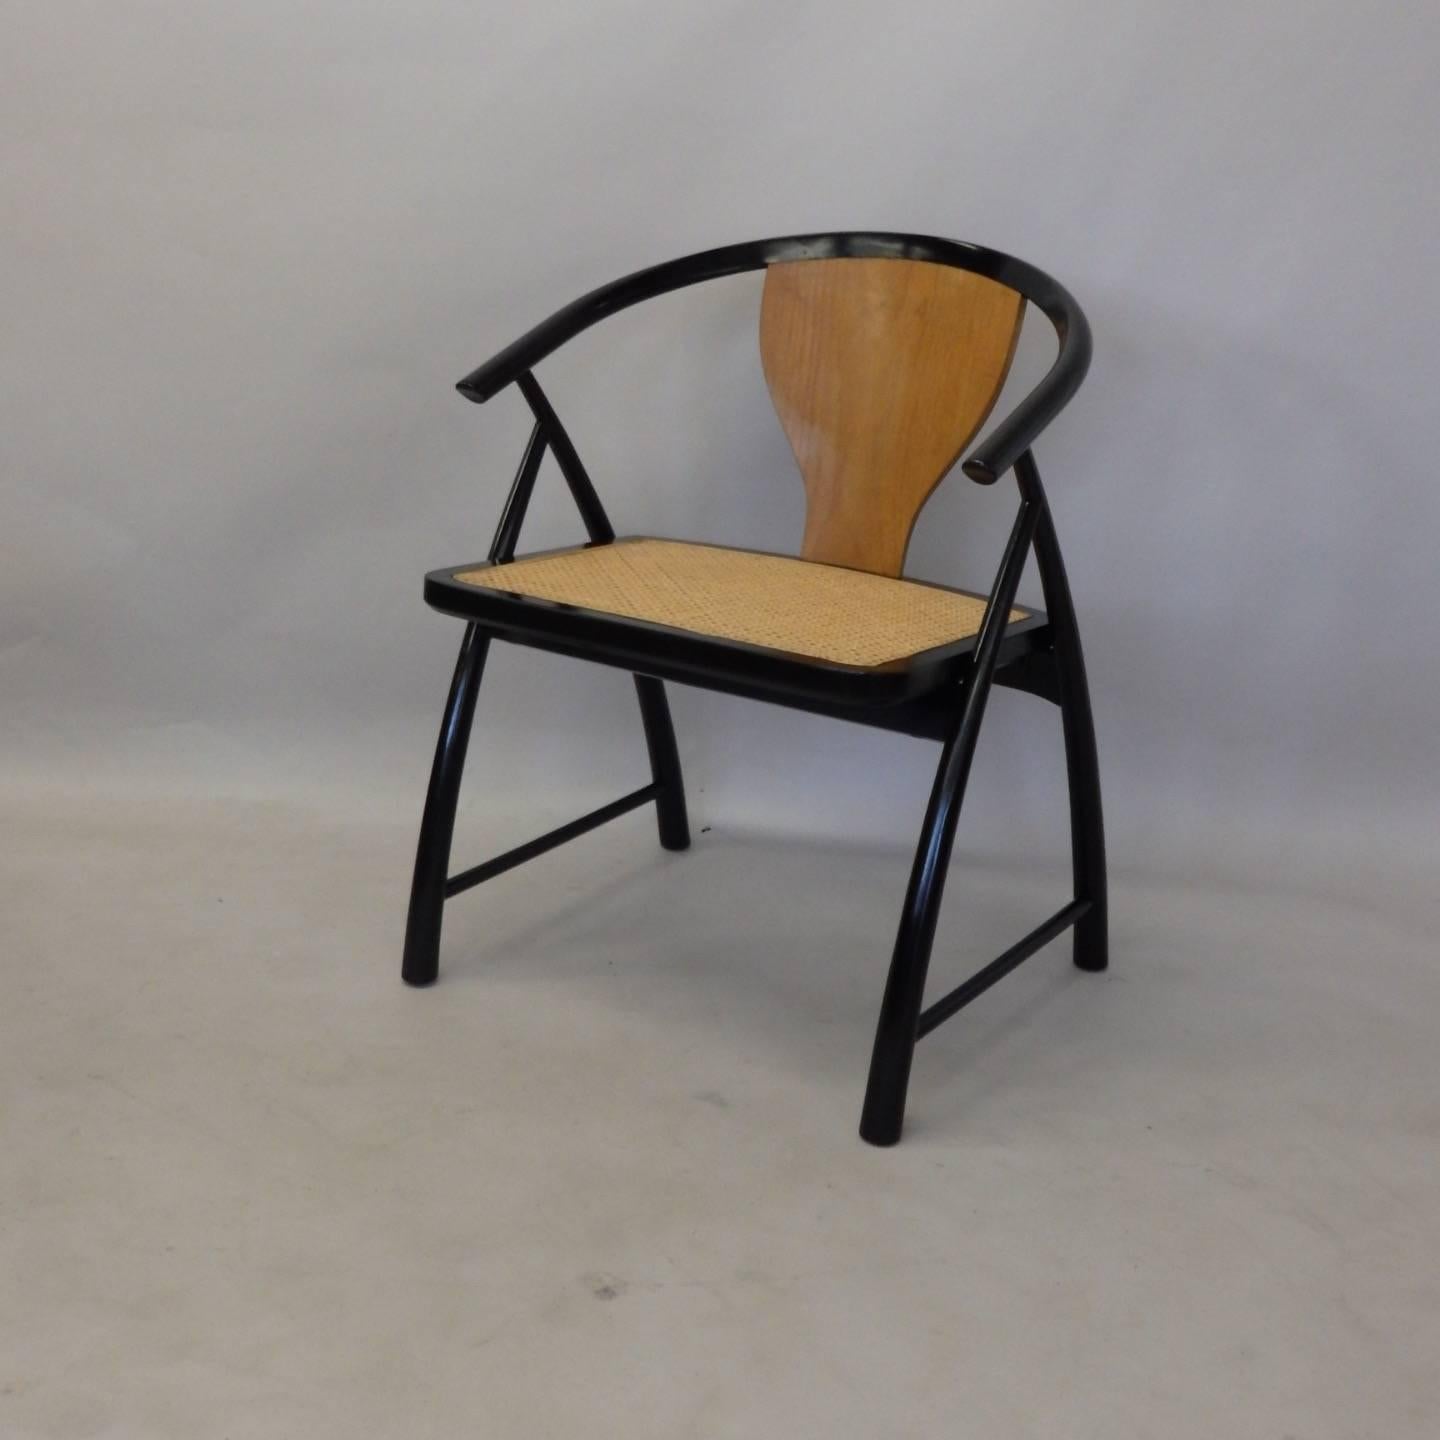 Zweifarbiger blonder Beistellstuhl mit schwarz lackiertem Rohrsitz. Michael Taylor für die Zuordnung zu Baker.